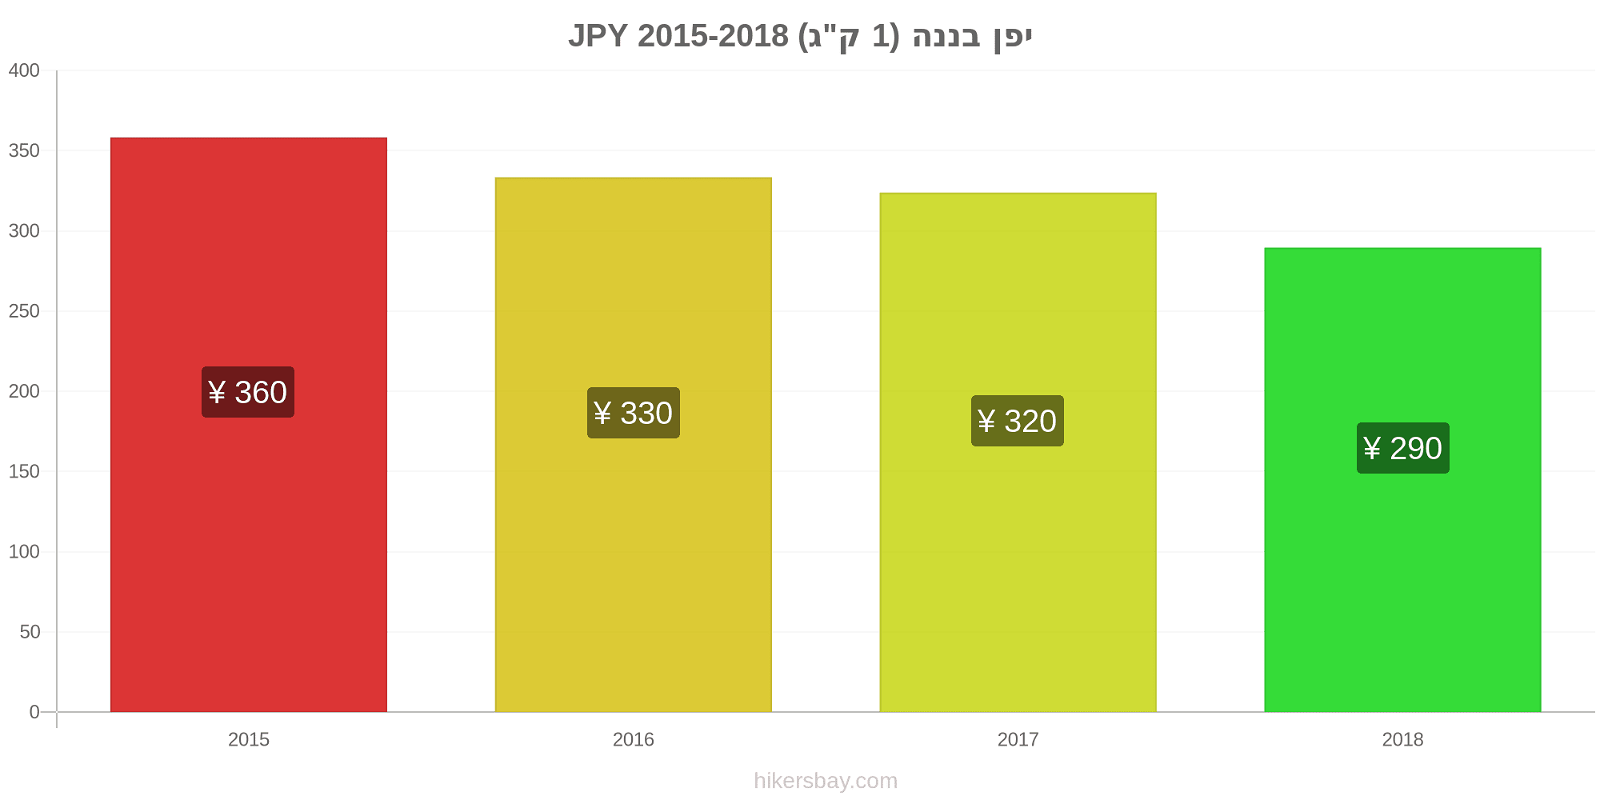 יפן שינויי מחיר בננות (1 ק"ג) hikersbay.com